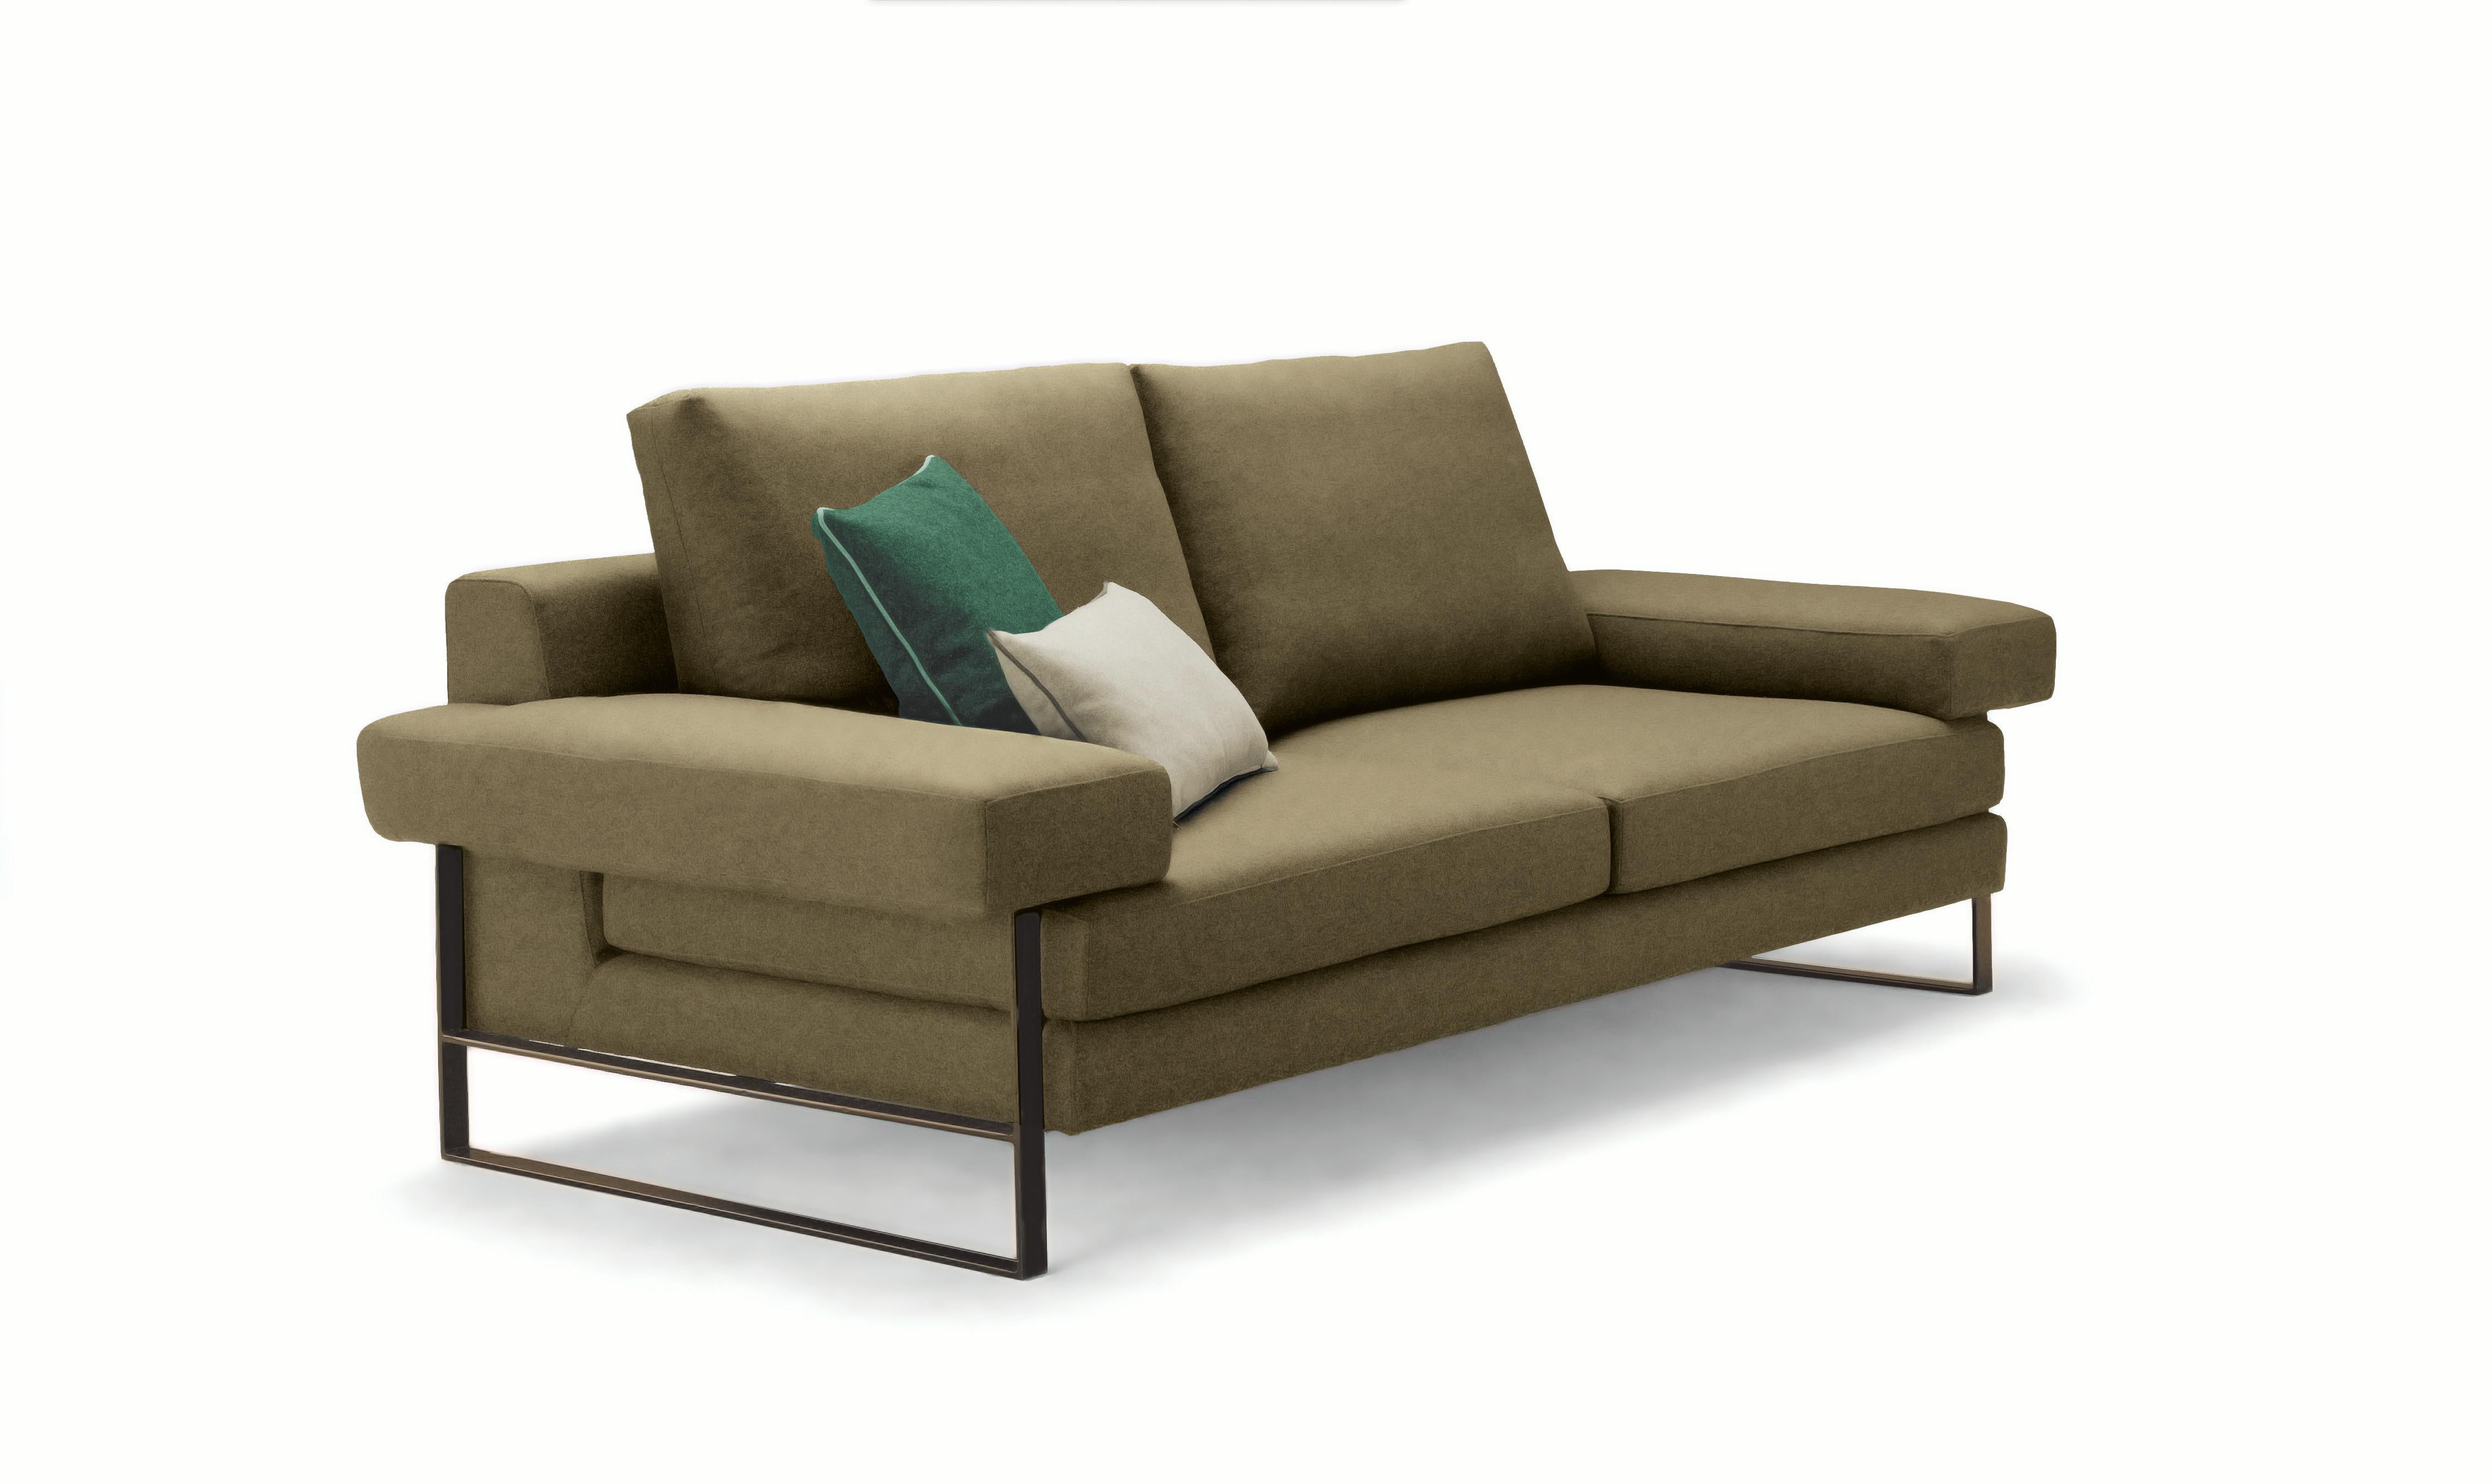 Perfekt ausbalanciert und unglaublich bequem, wird das Kuadra Sofa eine sehr wichtige Rolle in Ihrem Wohnzimmer spielen. Der hochwertige Samtbezug sitzt auf einer schwarz lackierten Metallstruktur. Dekorative Kissen auf den Bildern nicht enthalten.